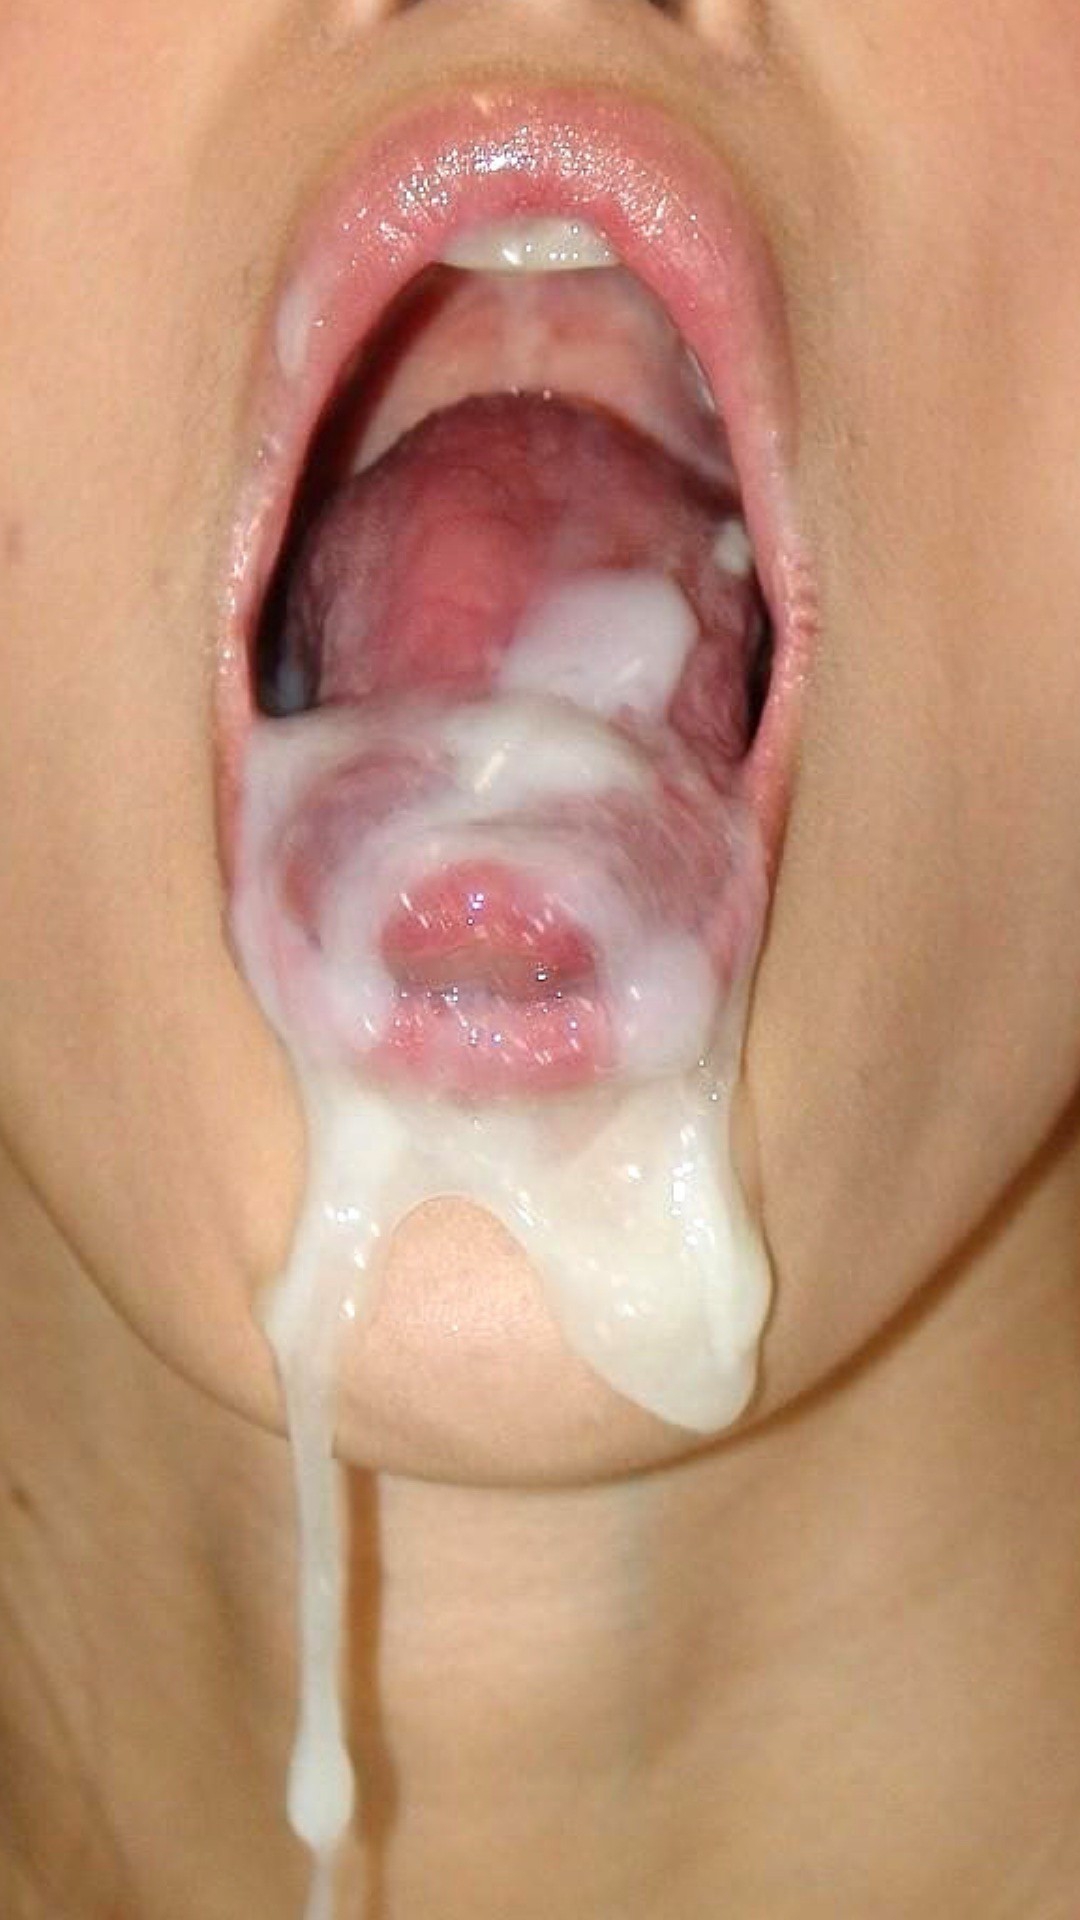 женская сперма в рот мужчины это фото 92